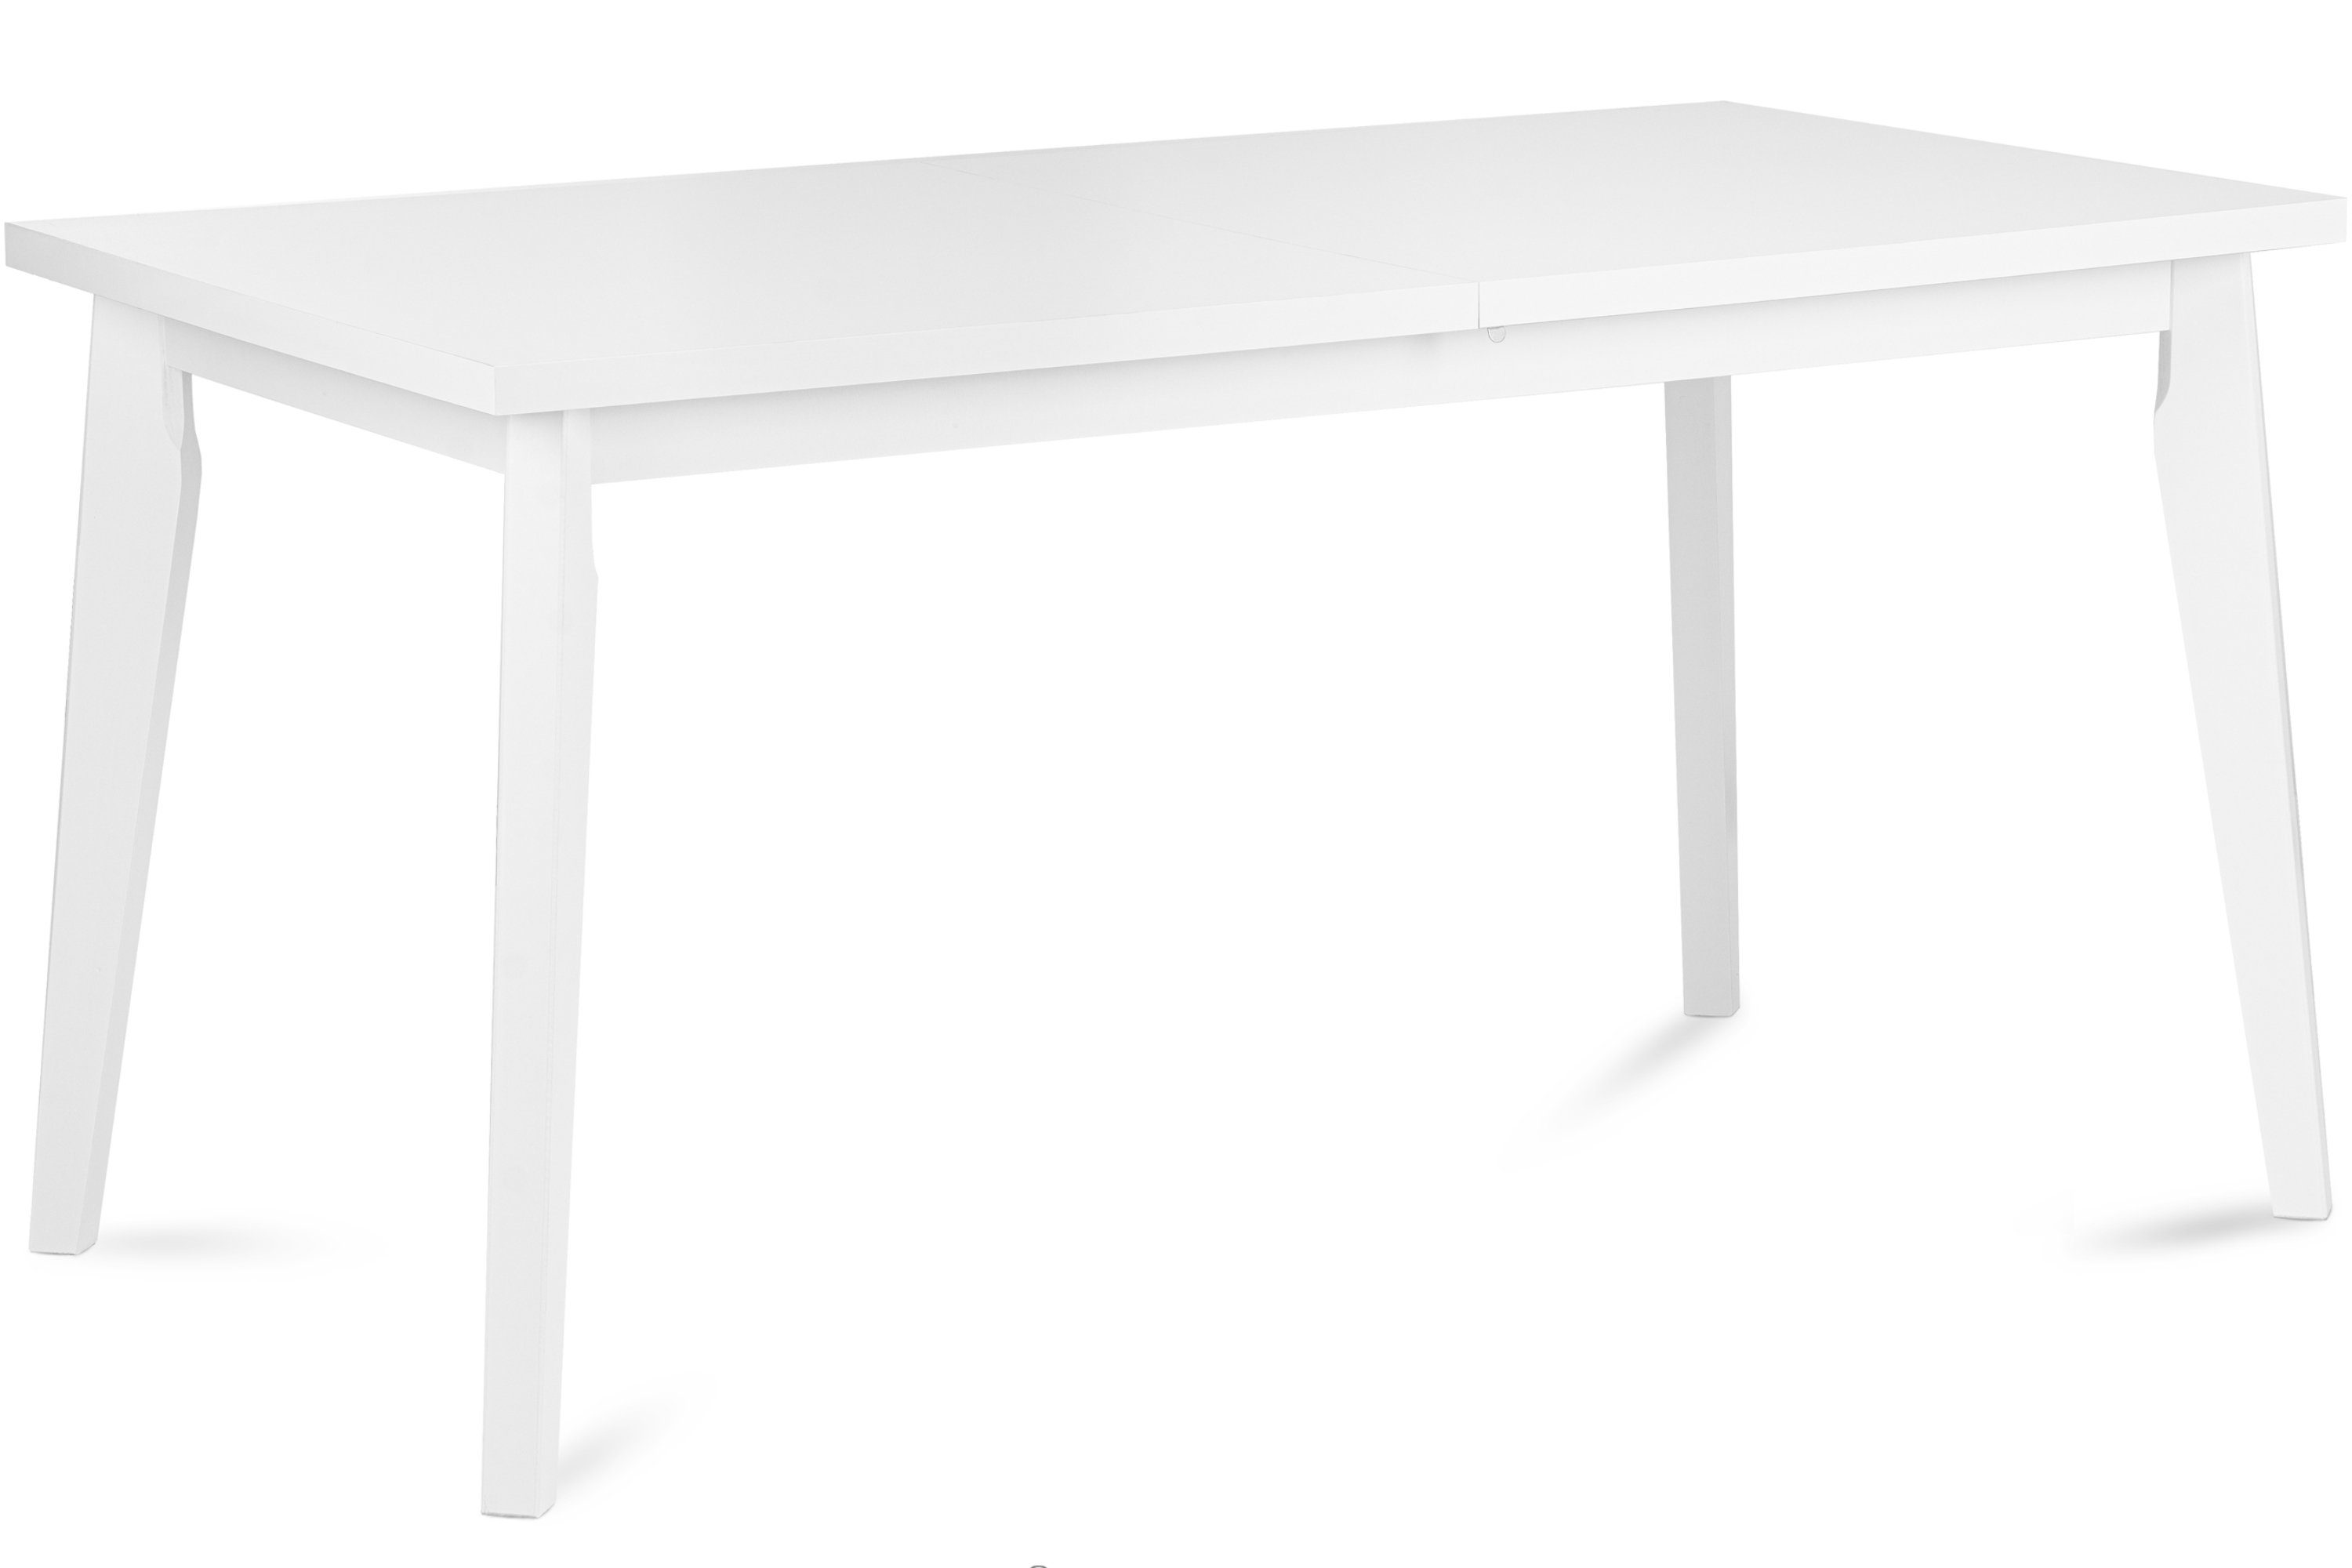 Konsimo Esstisch RHENA Esszimmertisch Küchentisch 150x80cm, ausziehbar bis 190cm, rechteckig weiß | weiß | weiß